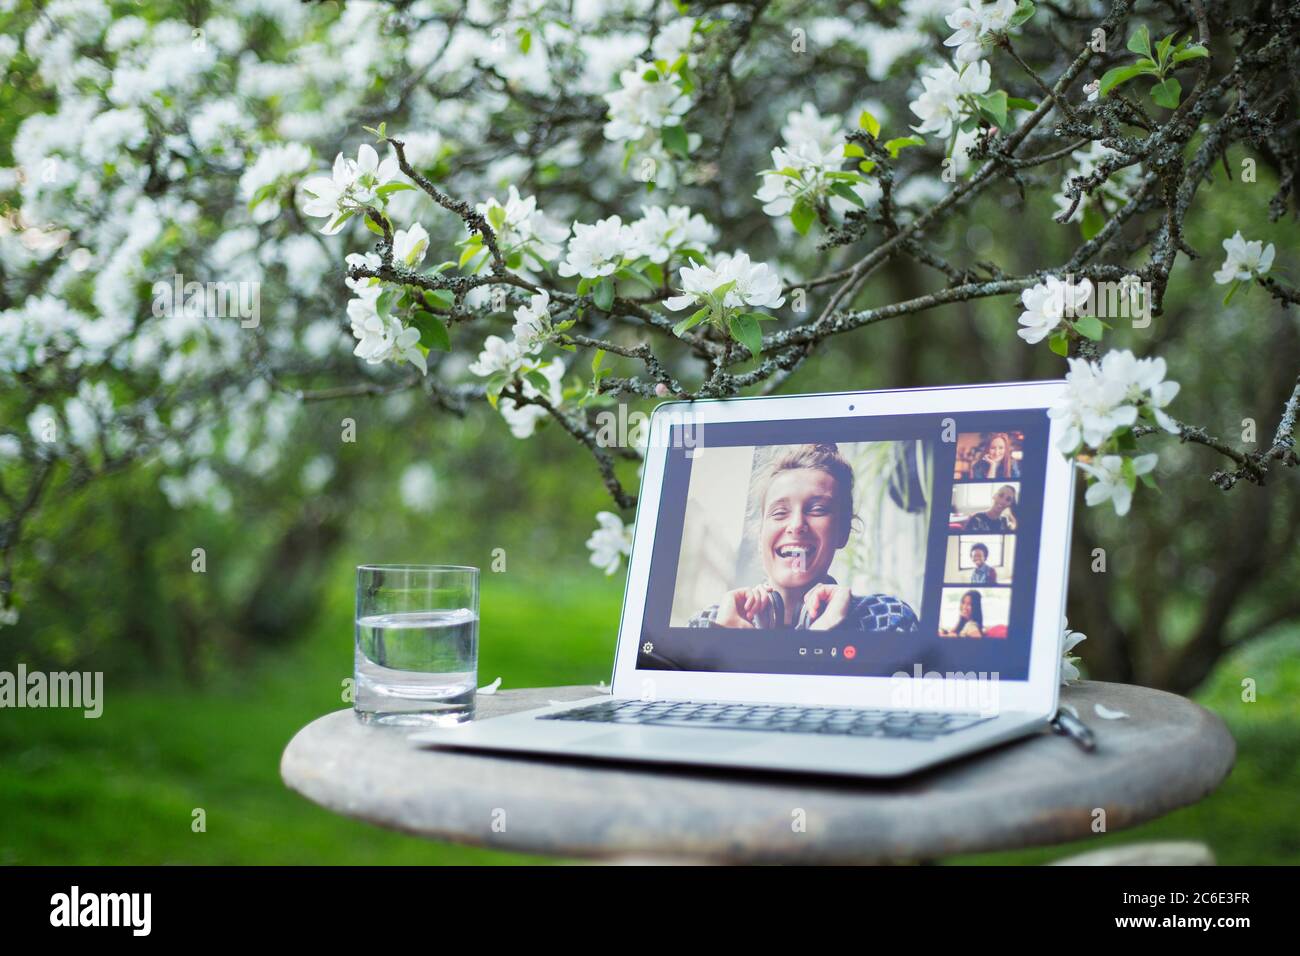 Freunde Video chatten auf Laptop-Bildschirm unter blühenden Baum im Garten Stockfoto